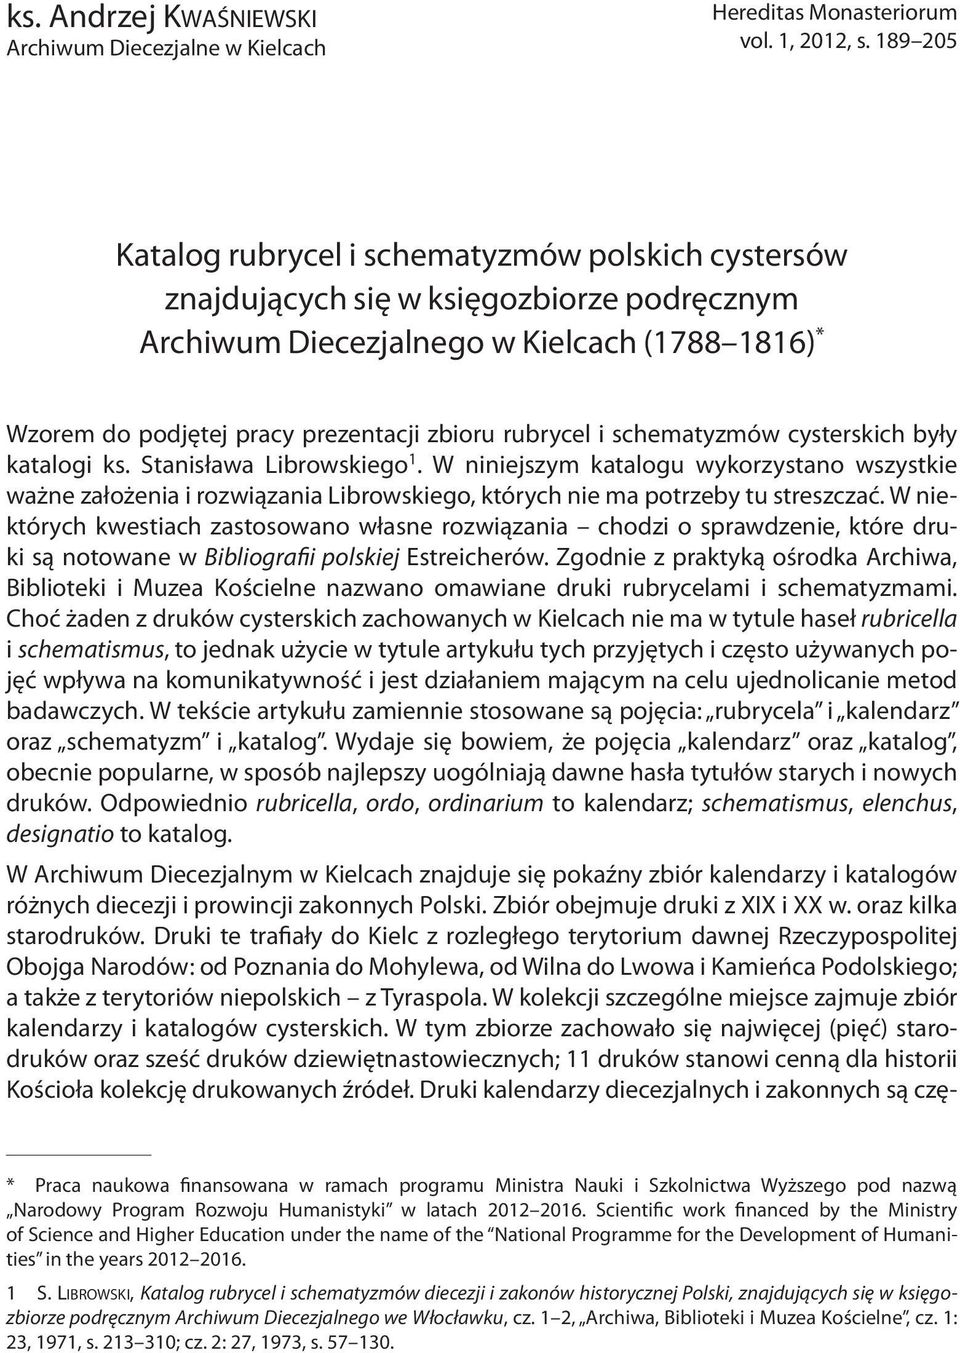 rubrycel i schematyzmów cysterskich były katalogi ks. Stanisława Librowskiego 1.